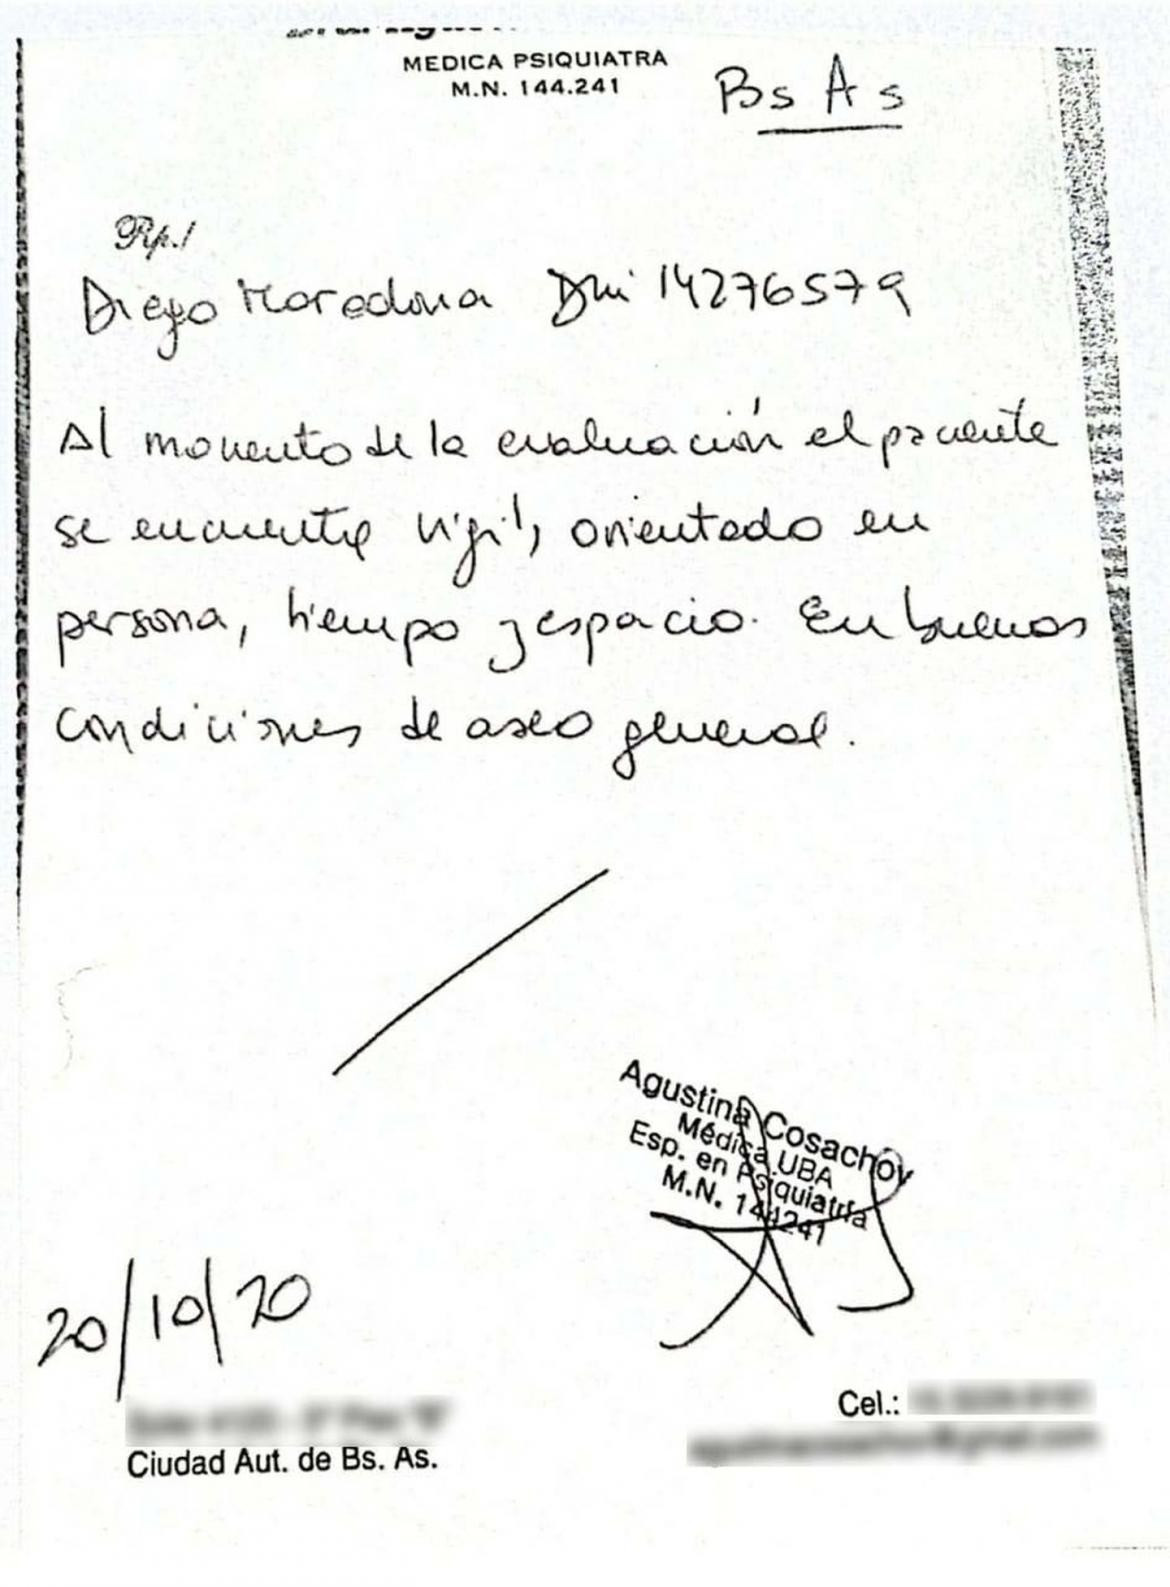 Certificado firmado por Agustin Cosachov sobre Maradona